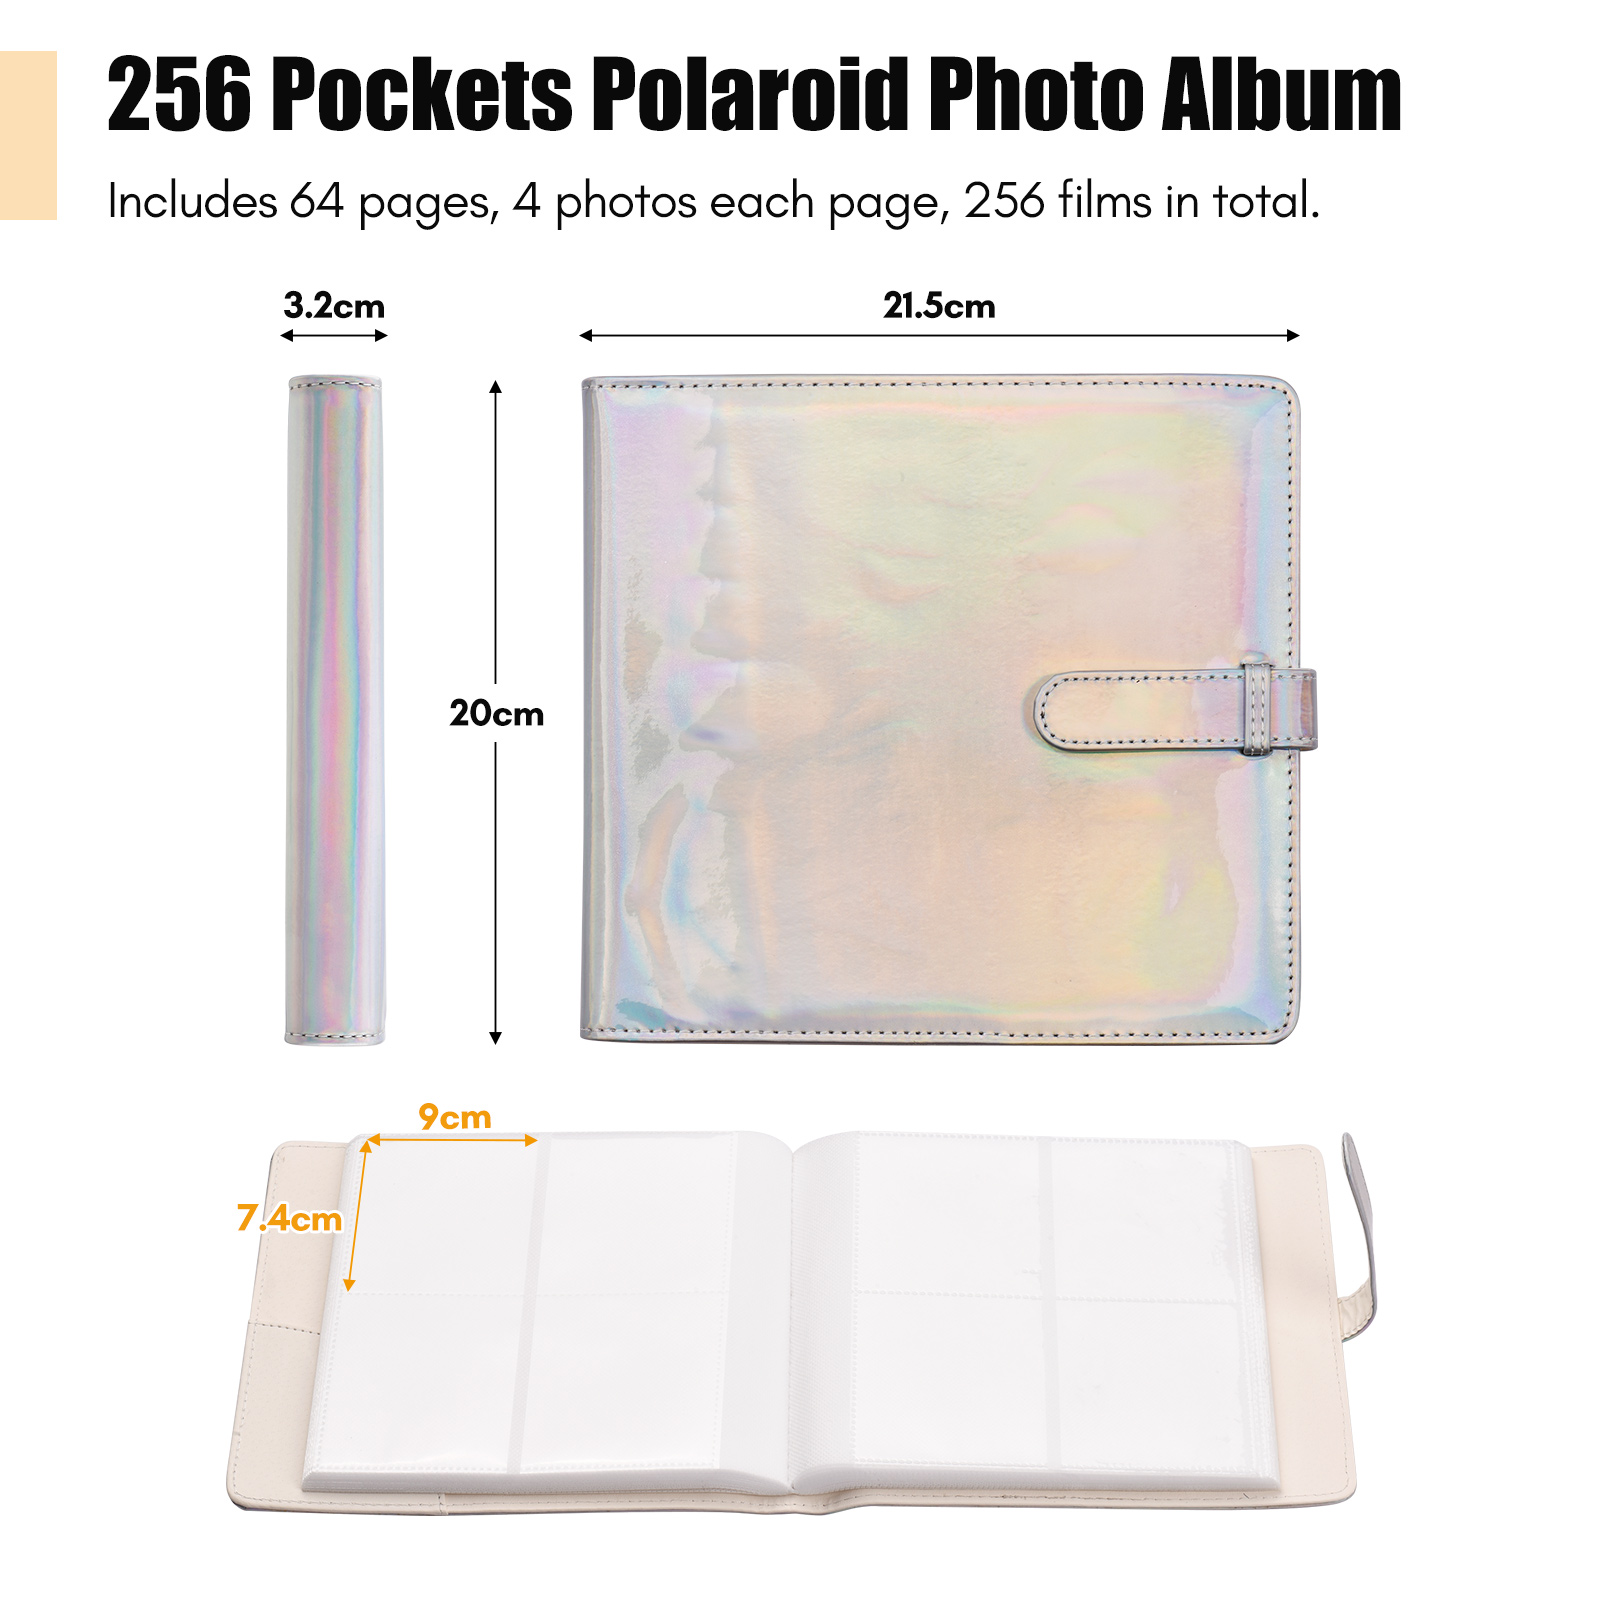 Pocket Photo Album 256 Photo Photos Photos for Fujifilm Instax Mini 11 90 70 9 8+ 8 Liplay 20*21.5cm 7.4*9cm Photo Album